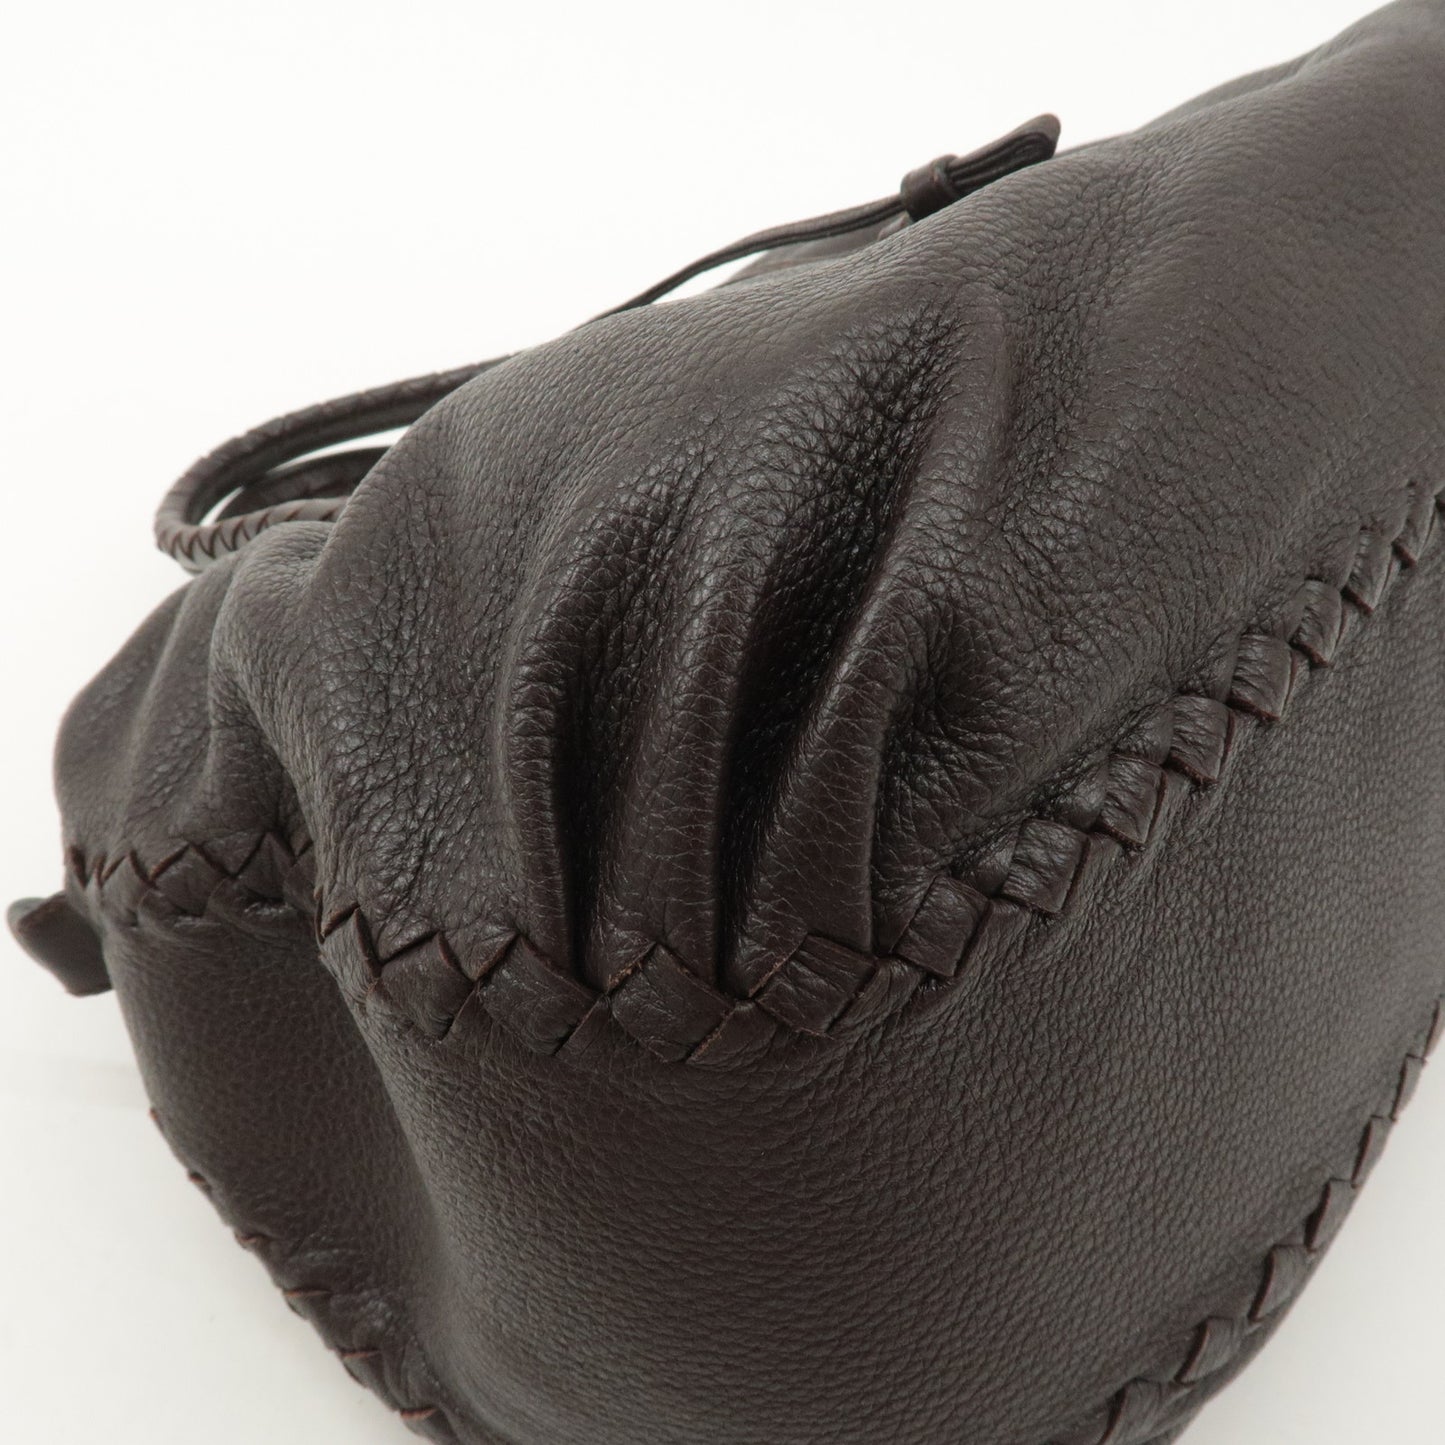 BOTTEGA VENTETA Intrecciato Leather 2Way Shoulder Bag Brown 210612